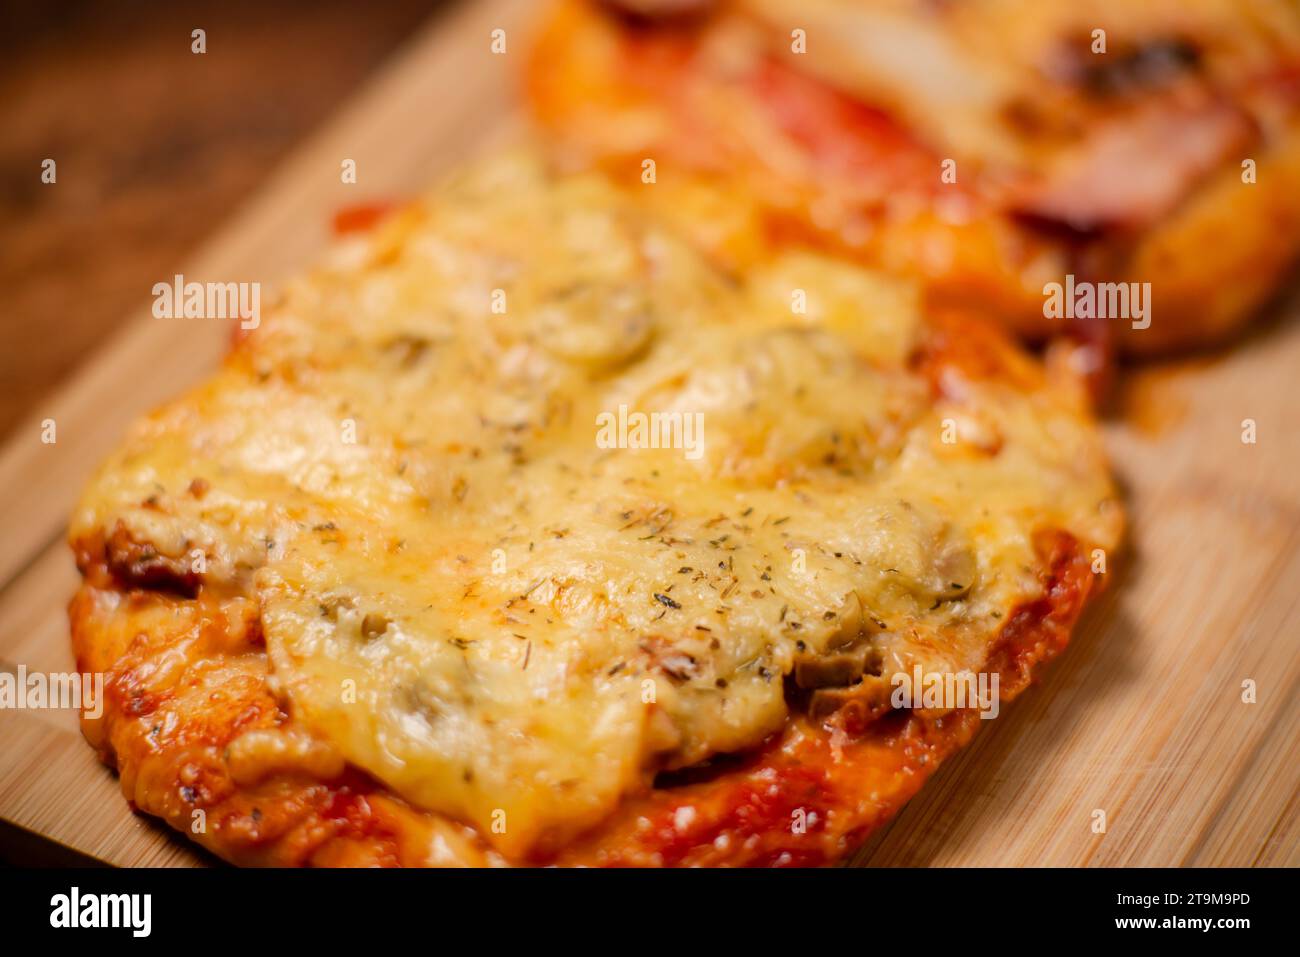 Kulinarische Köstlichkeiten: Ein Duo aus kleinen, selbst gebackenen Pizzen, jede mit aromatischem Schinken und geschmolzenem Käse, präsentiert auf einem hölzernen Schneidebrett Stockfoto